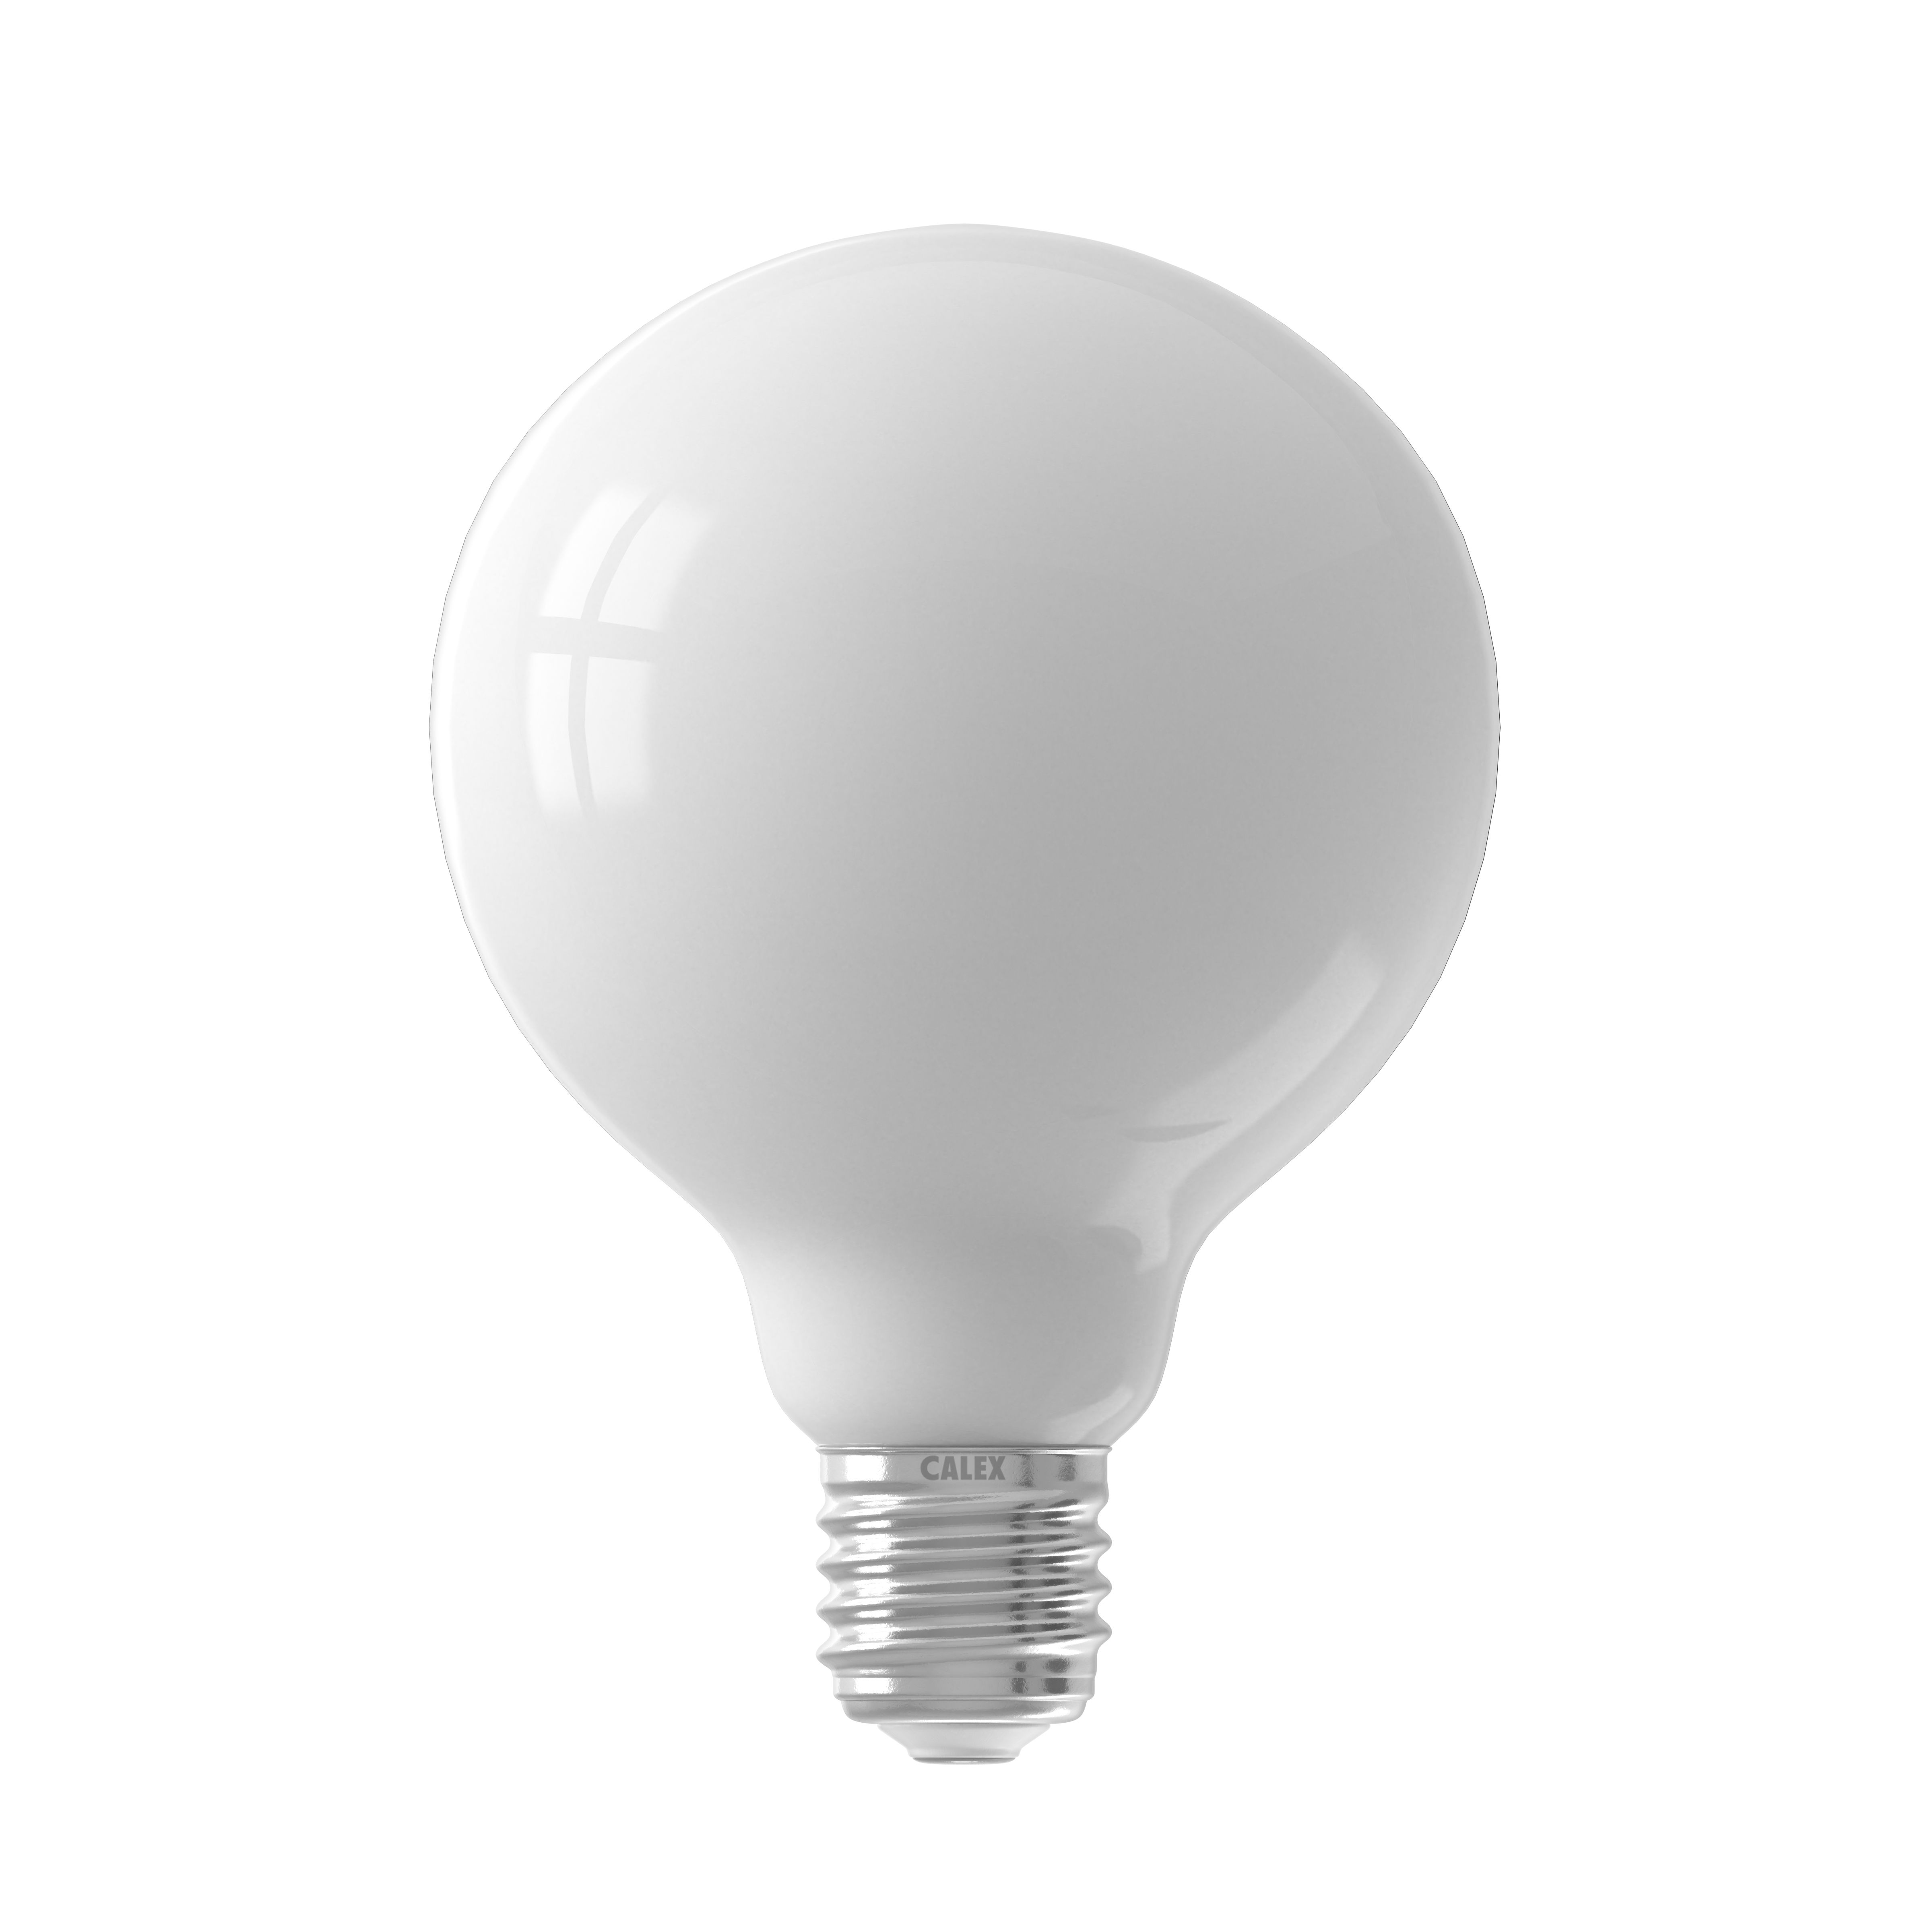 Ampoule LED 11 watts E27 boule 1055 lumens blanc chaud dimmable opale D 9,5  cm, ETC Shop: lampes, mobilier, technologie. Tout d'une source.